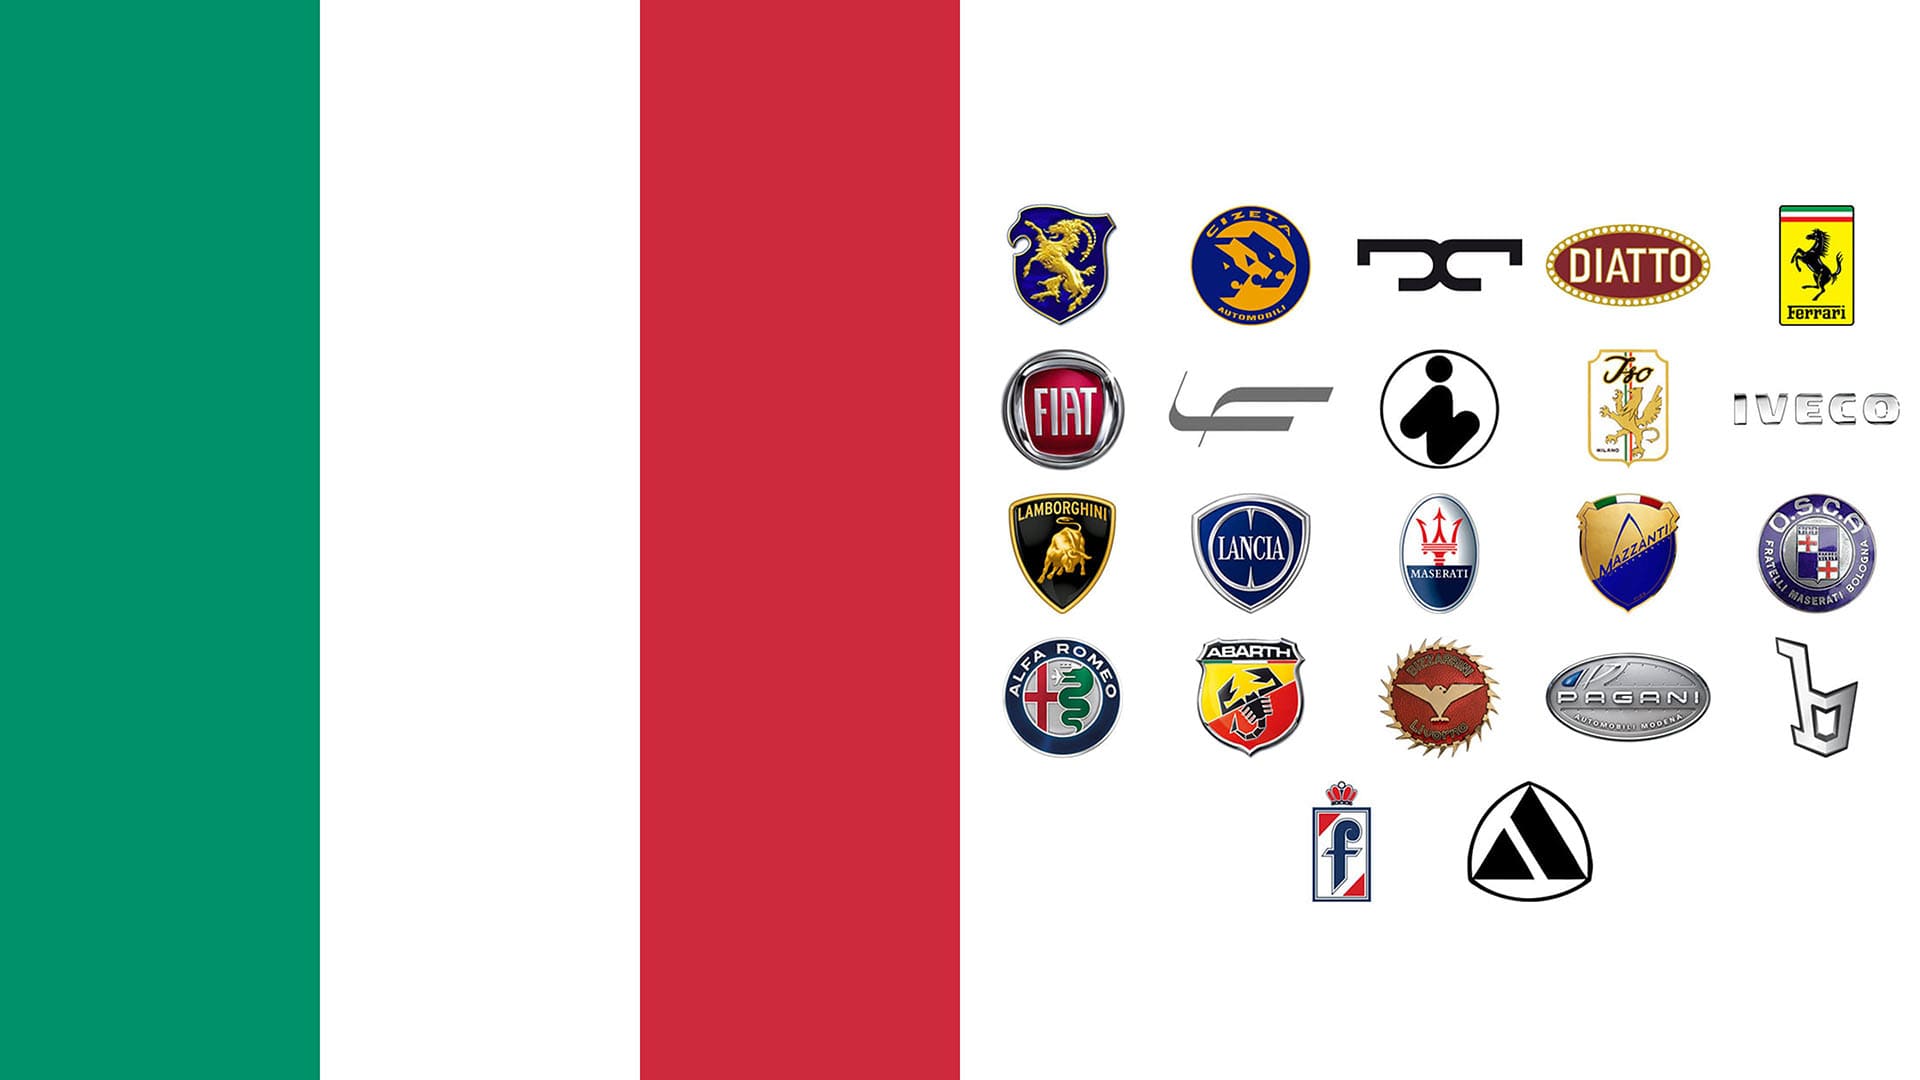 Les logos des marques de voiture - 123 Pare-Brise Leur histoires